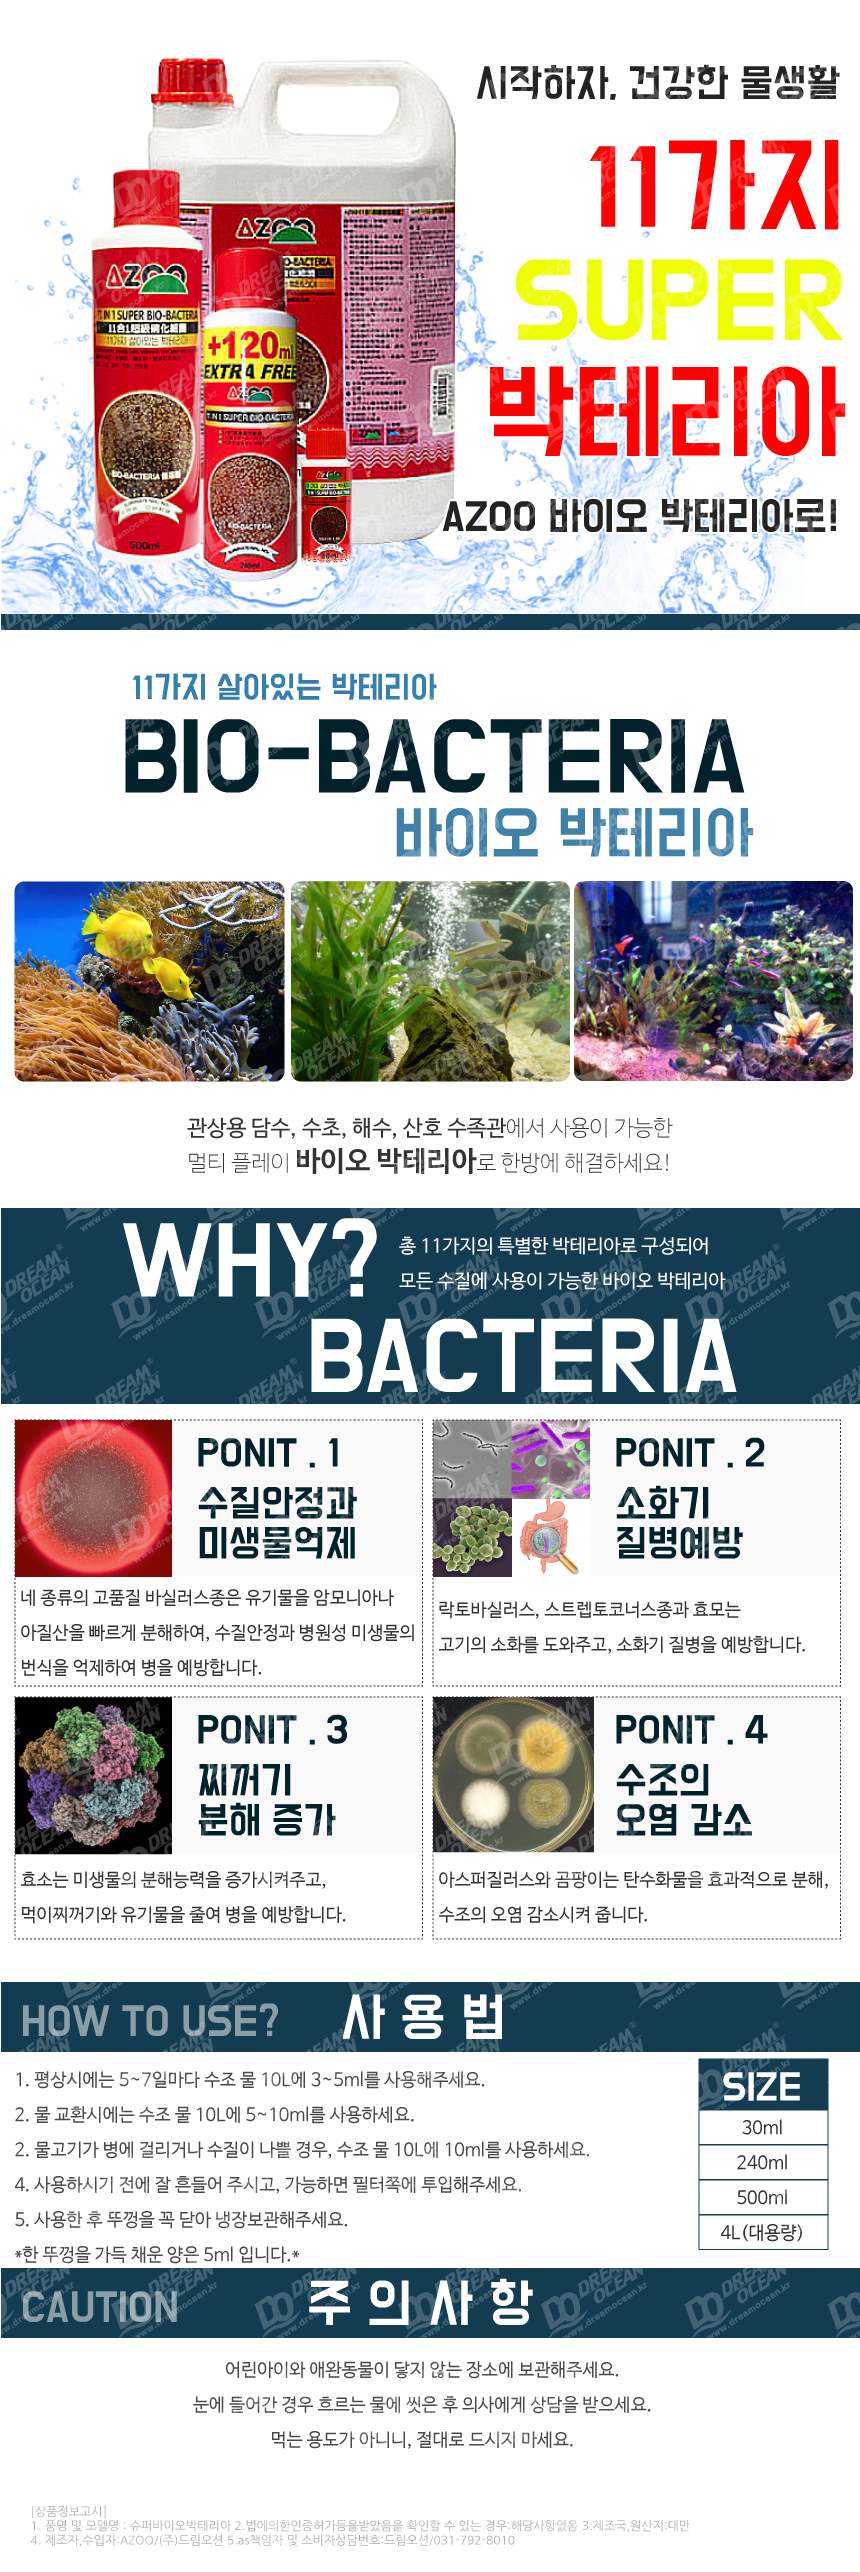 aqua_bacteria_140730.jpg